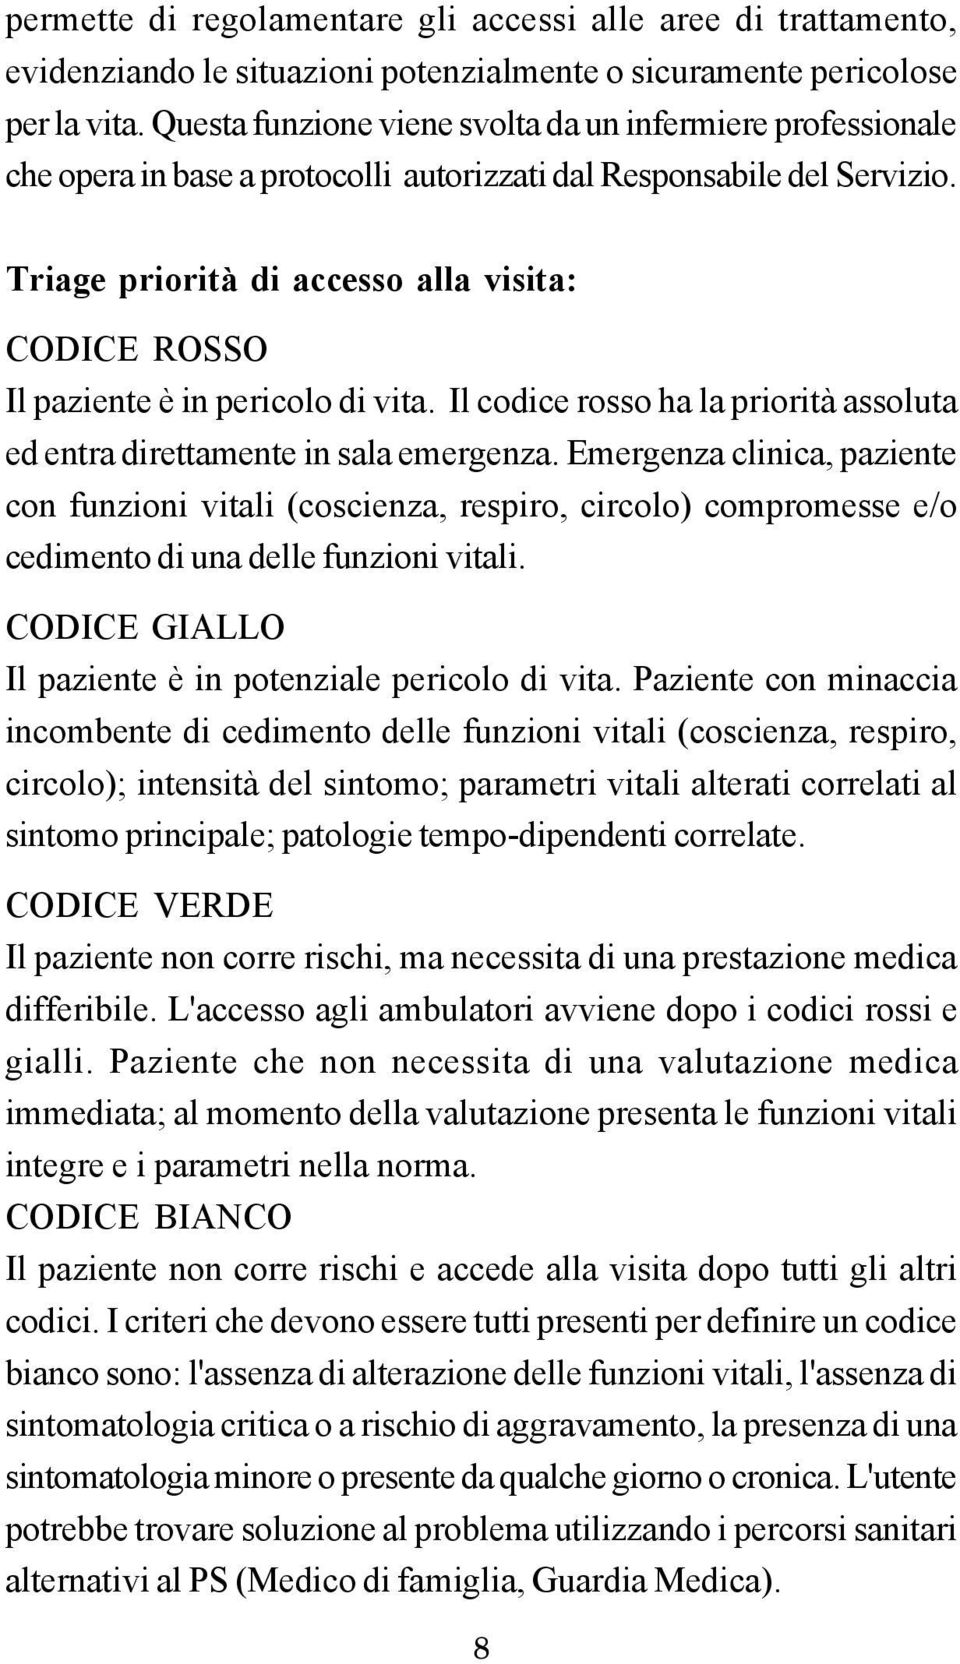 Triage priorità di accesso alla visita: CODICE ROSSO Il paziente è in pericolo di vita. Il codice rosso ha la priorità assoluta ed entra direttamente in sala emergenza.